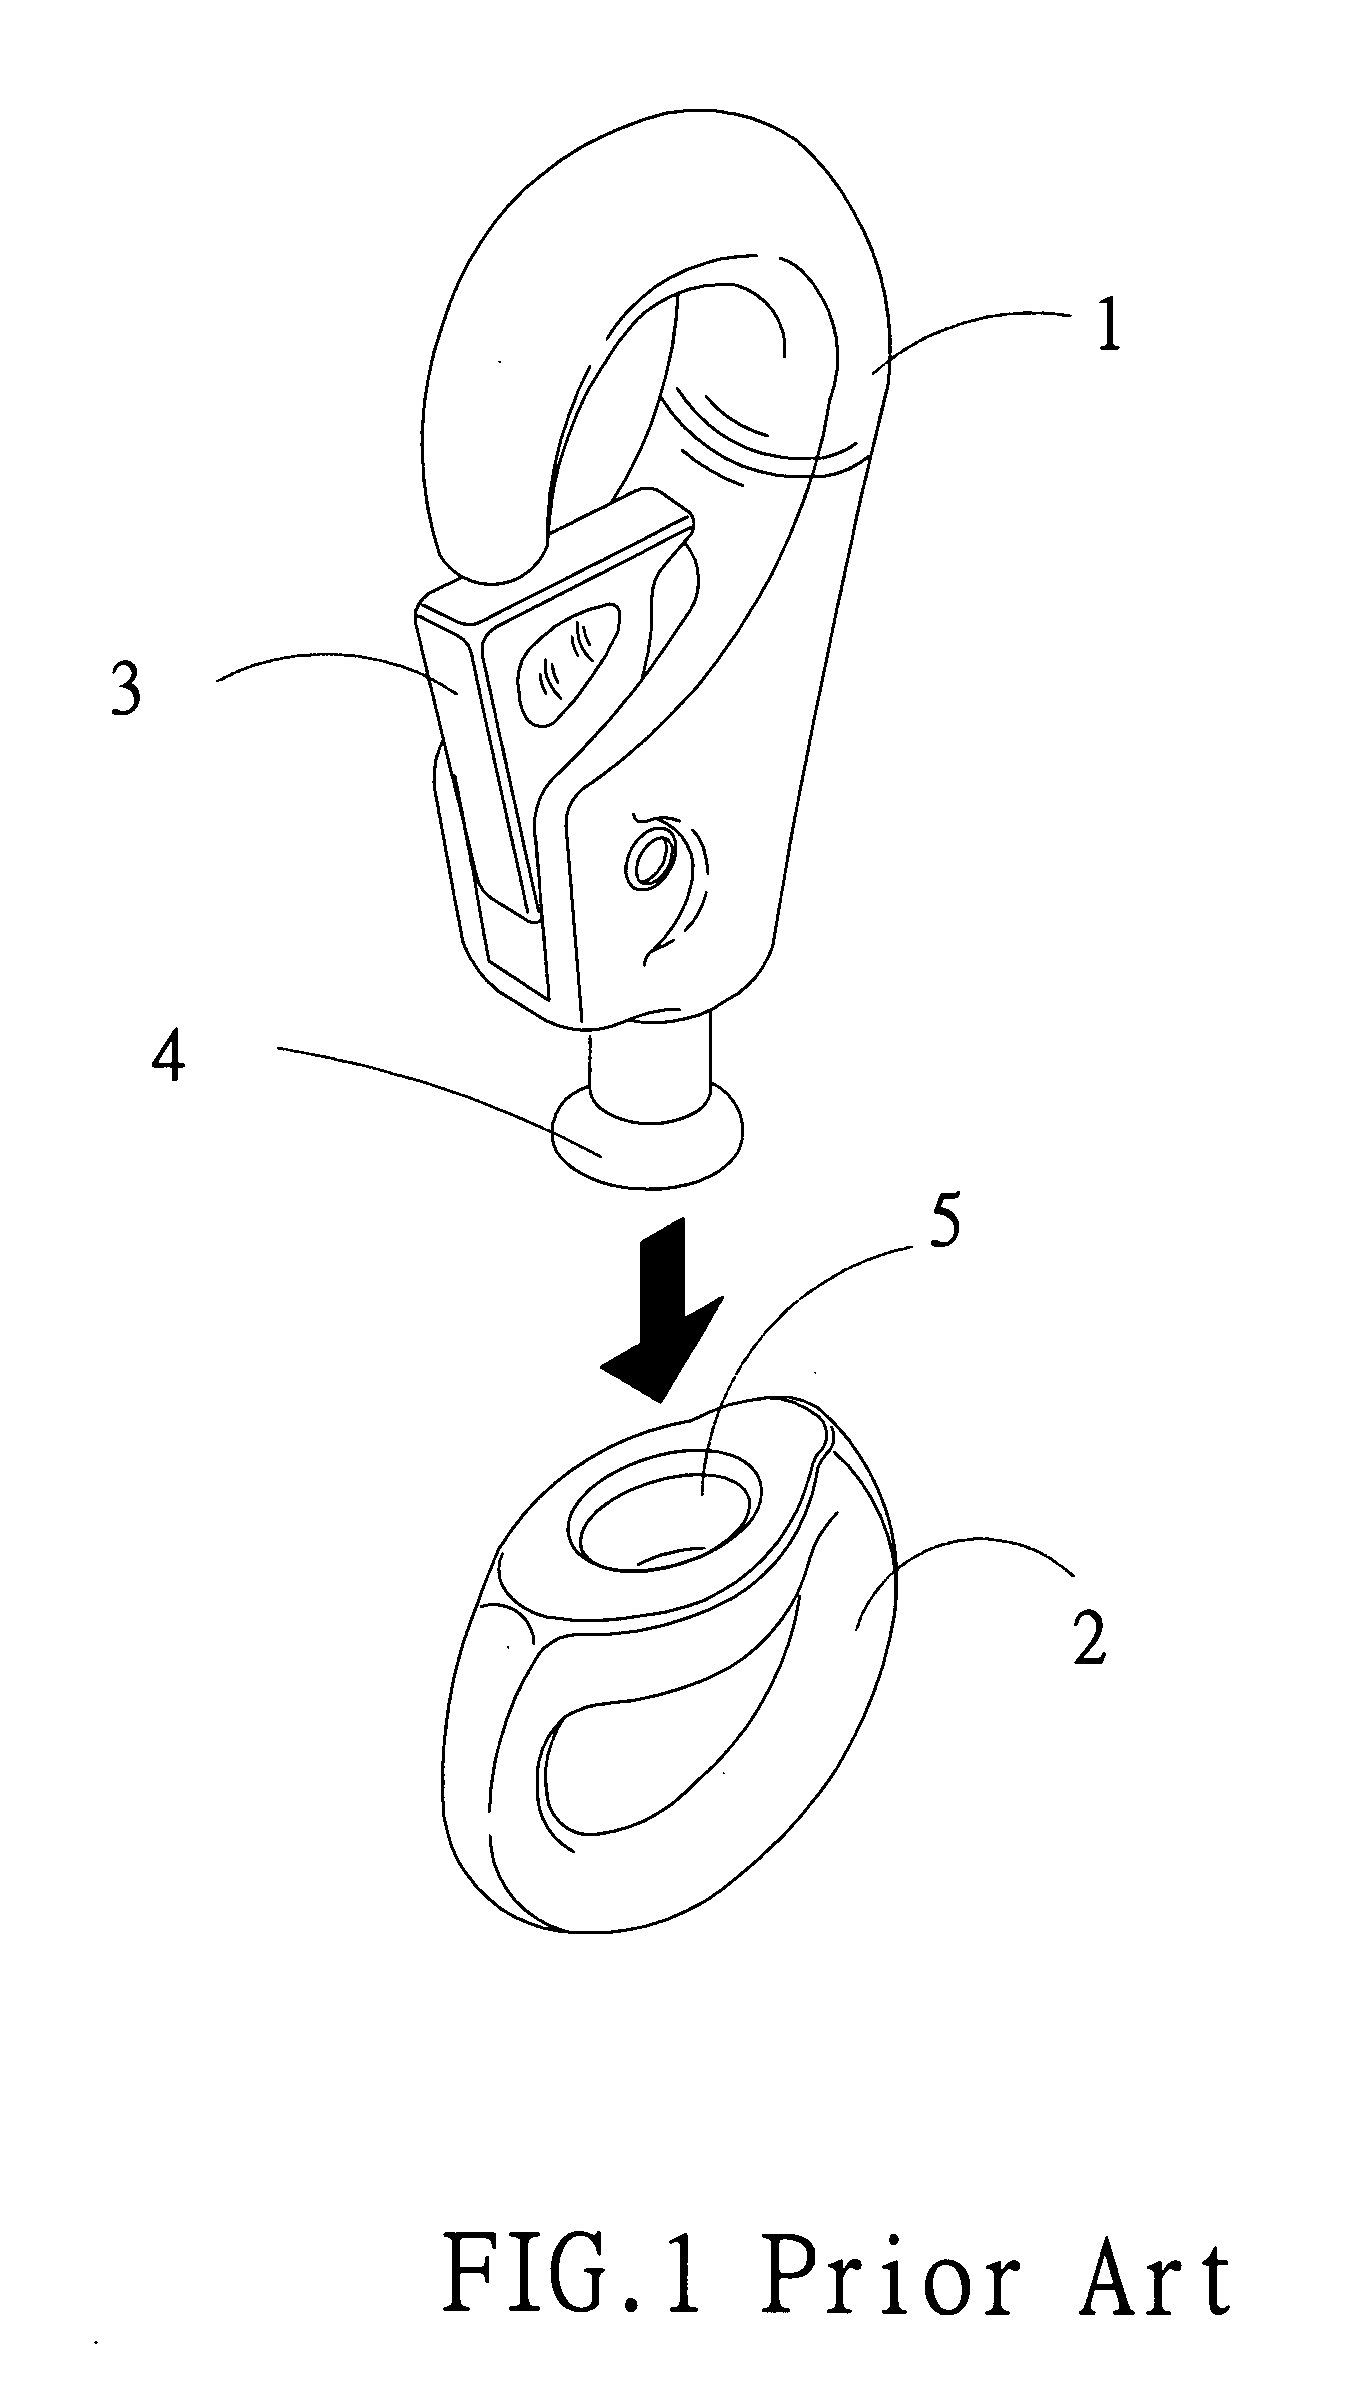 Hook forming method